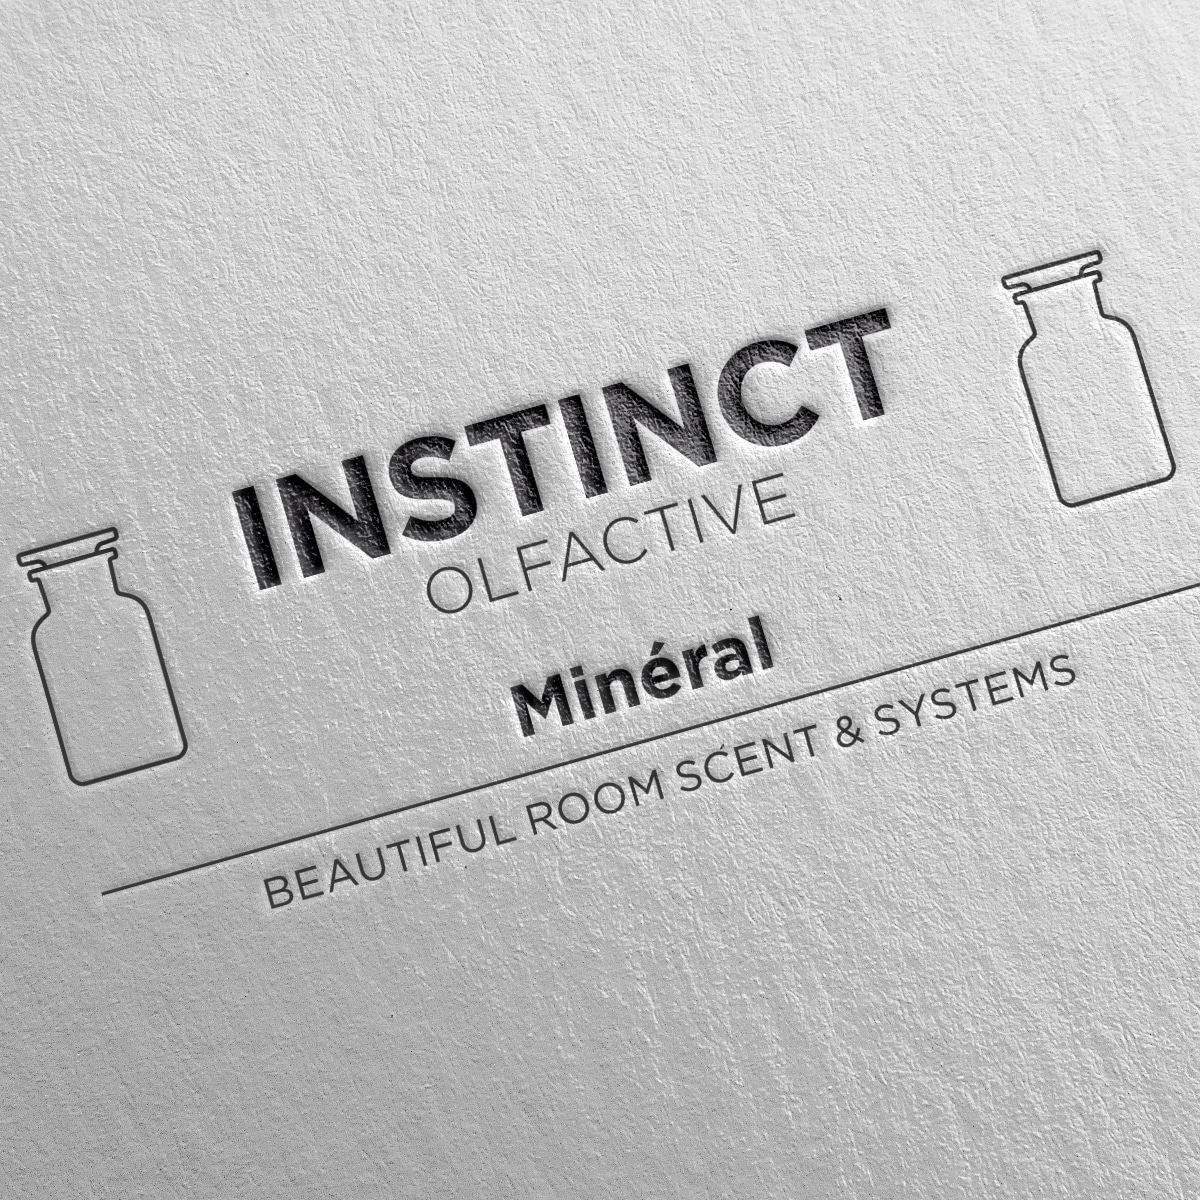 INSTINCT olfactive